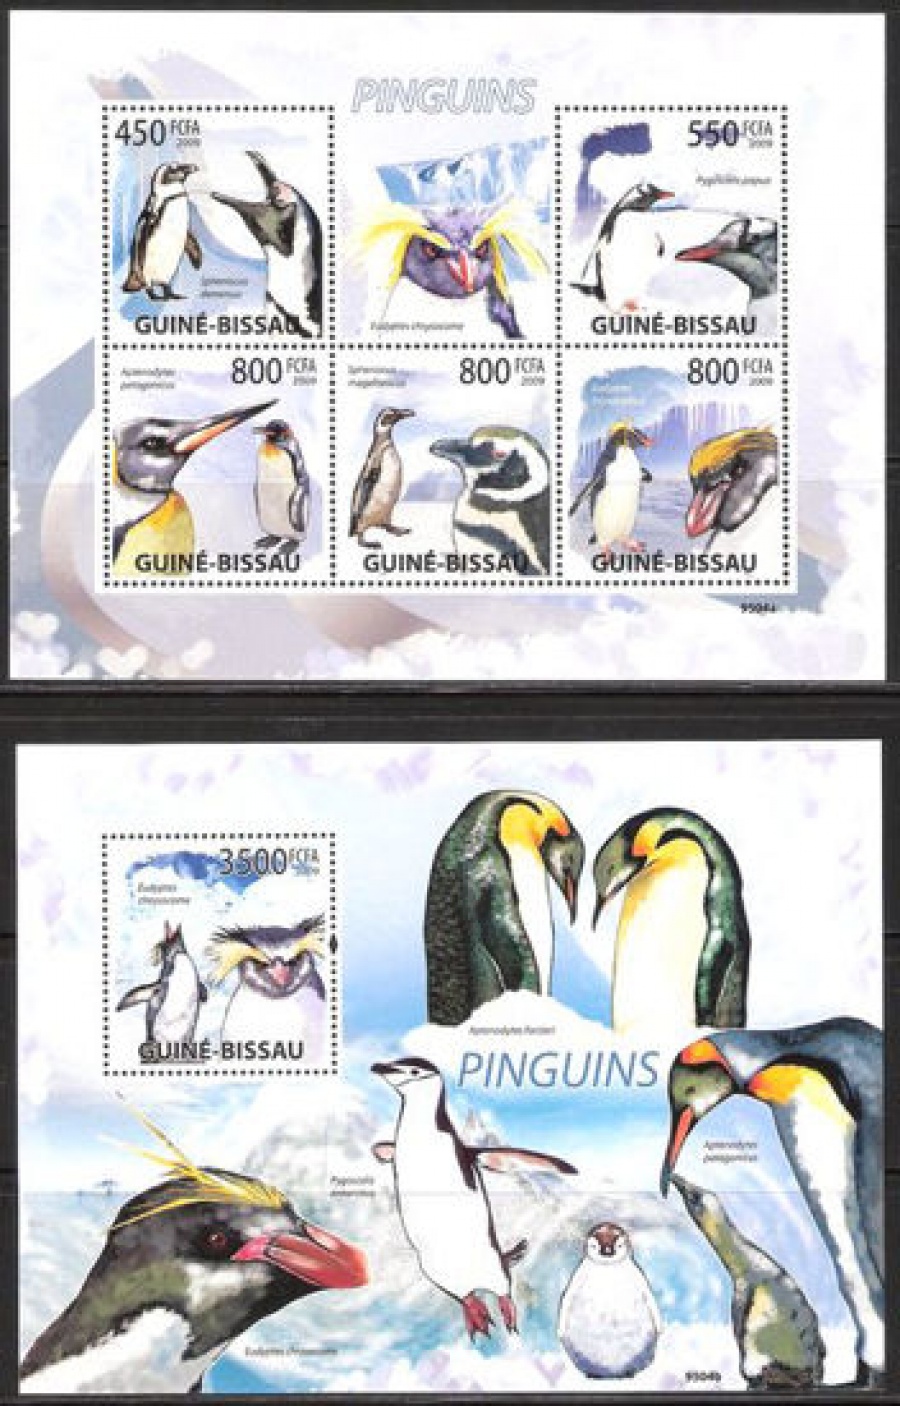 Почтовая марка НК. Гвинея-Бисау. Михель № 4390-4394 и ПБ № 714